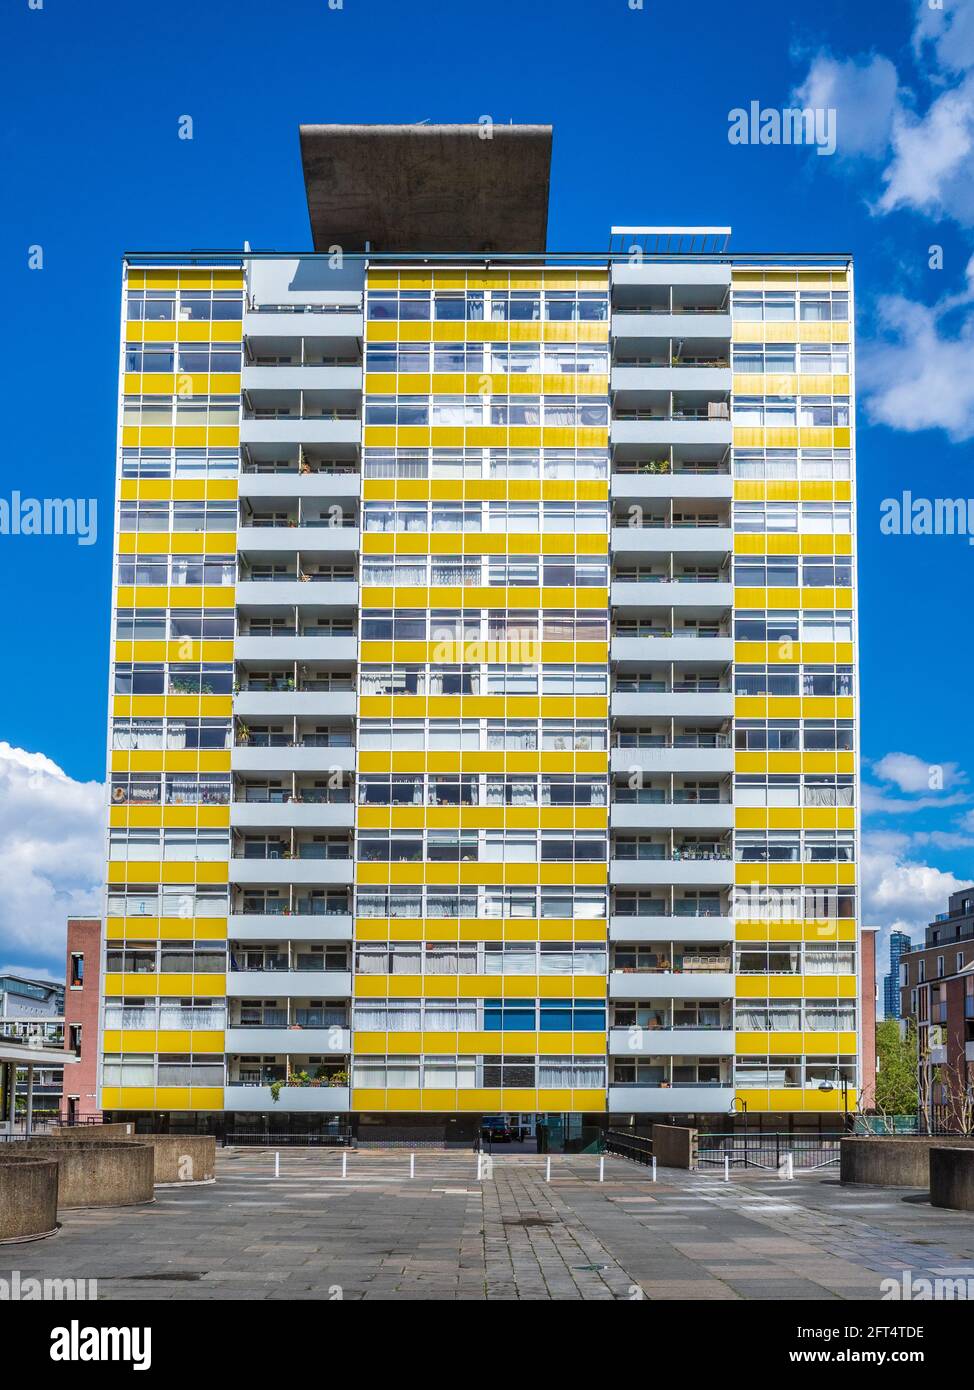 Great Arthur House sur le Golden Lane Estate dans la ville de Londres. Un bloc d'appartements de 16 étages est terminé en 1956. Architectes Chamberlin, Powell Et Bon. Banque D'Images